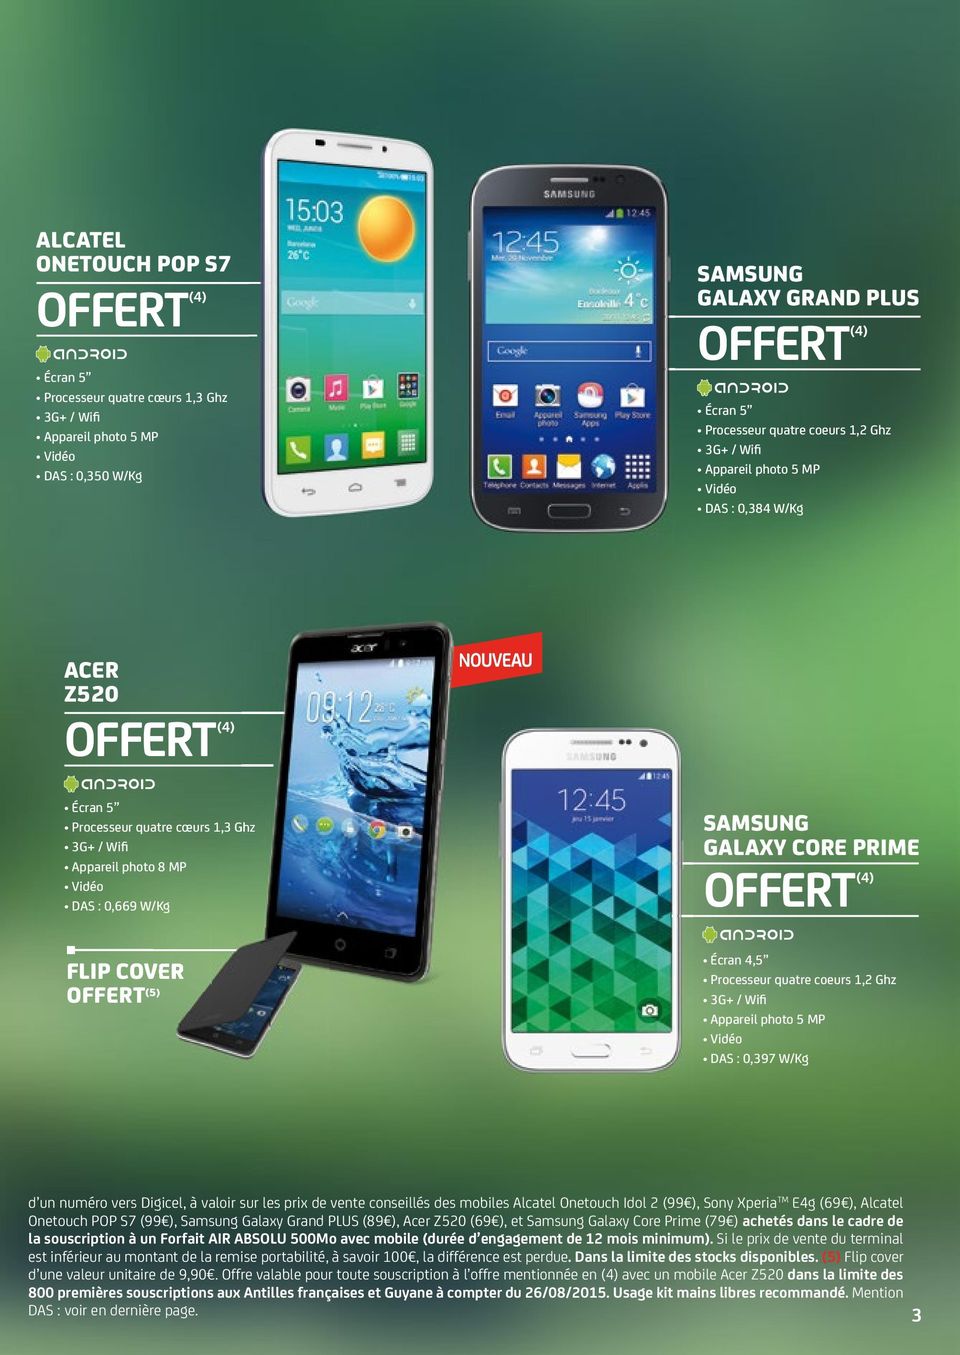 Digicel, à valoir sur les prix de vente conseillés des mobiles Alcatel Onetouch Idol 2 (99 ), Sony Xperia TM E4g (69 ), Alcatel Onetouch POP S7 (99 ), Samsung Galaxy Grand PLUS (89 ), Acer Z520 (69